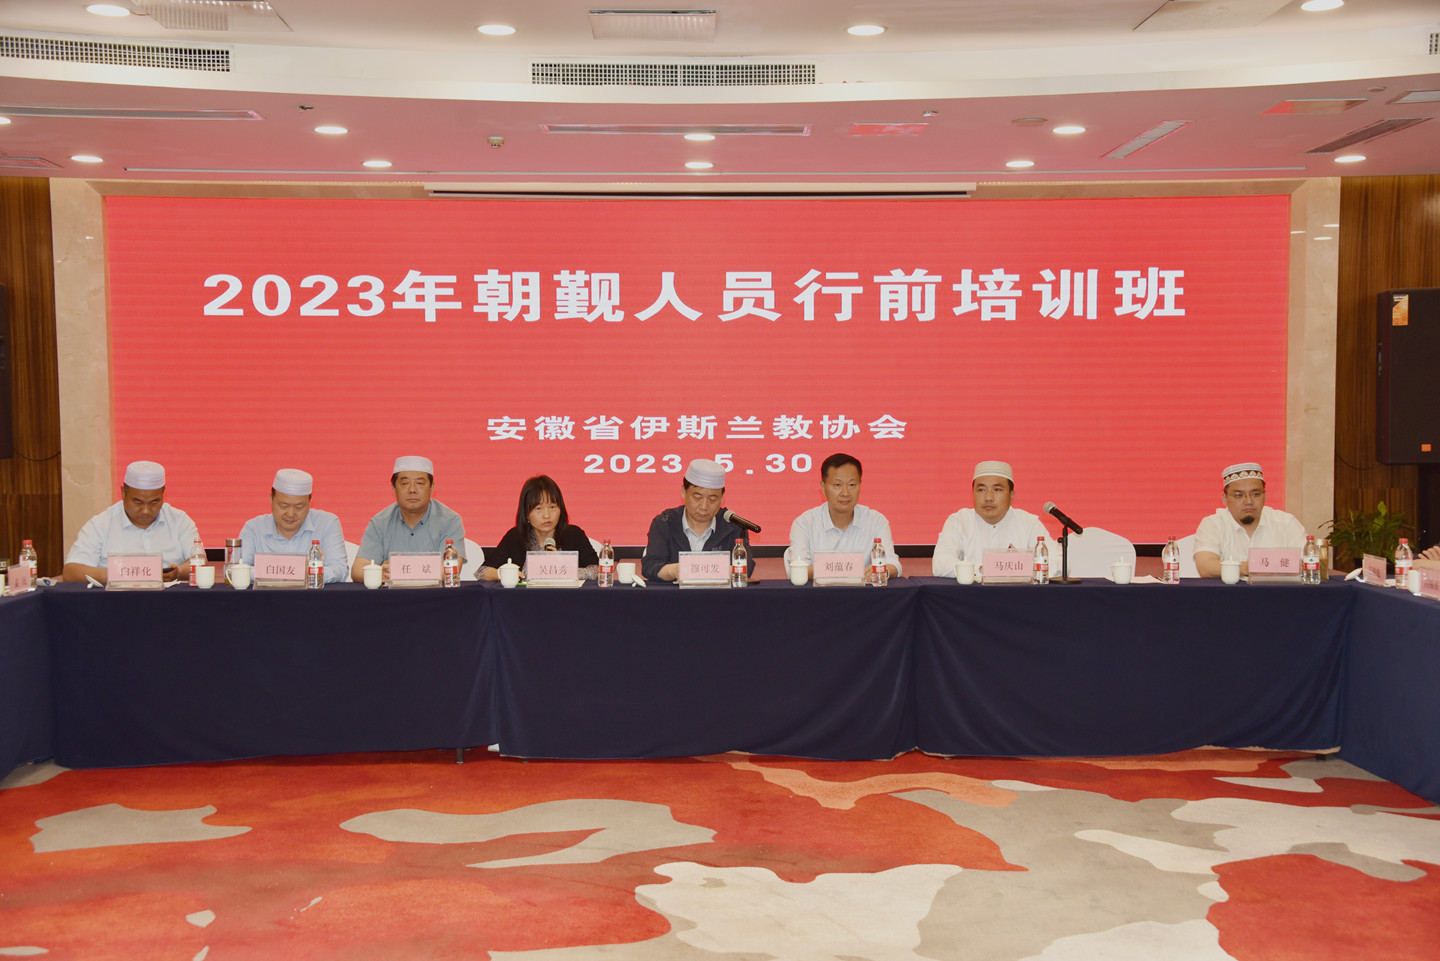 安徽省伊斯兰教协会举办2023年度朝觐人员行前培训班